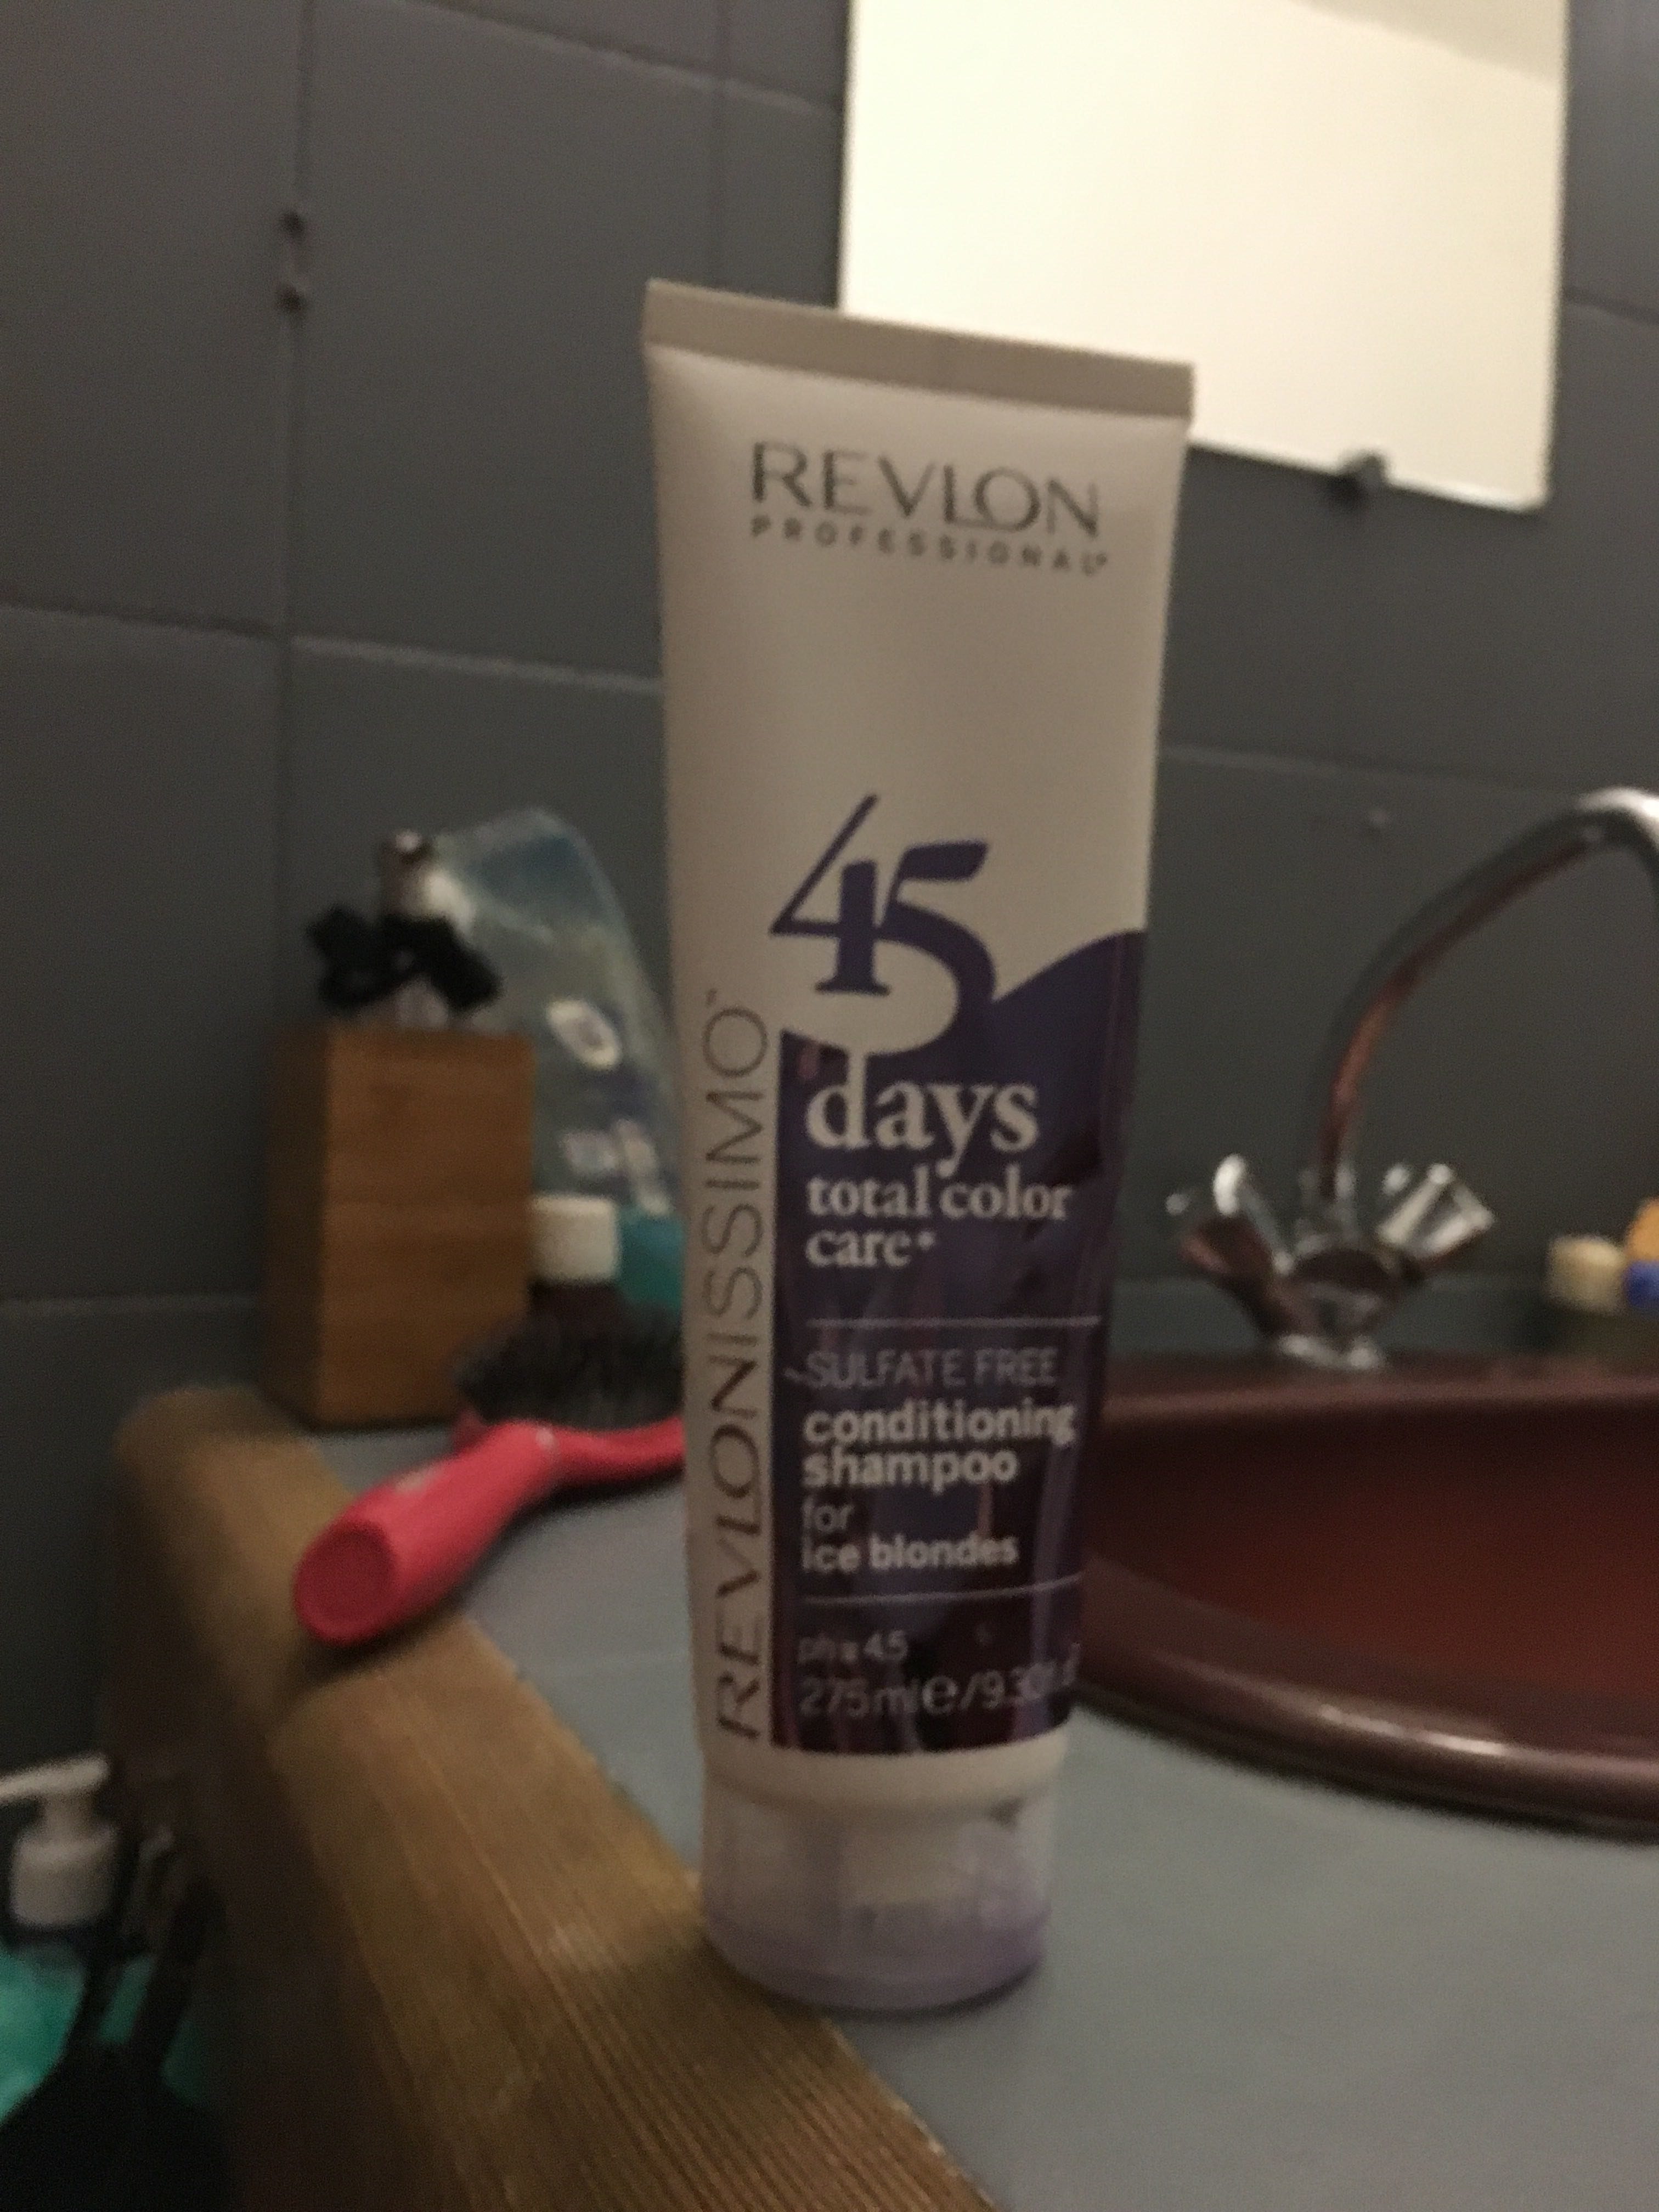 45 days total color care for ice blondes - Produkt - fr